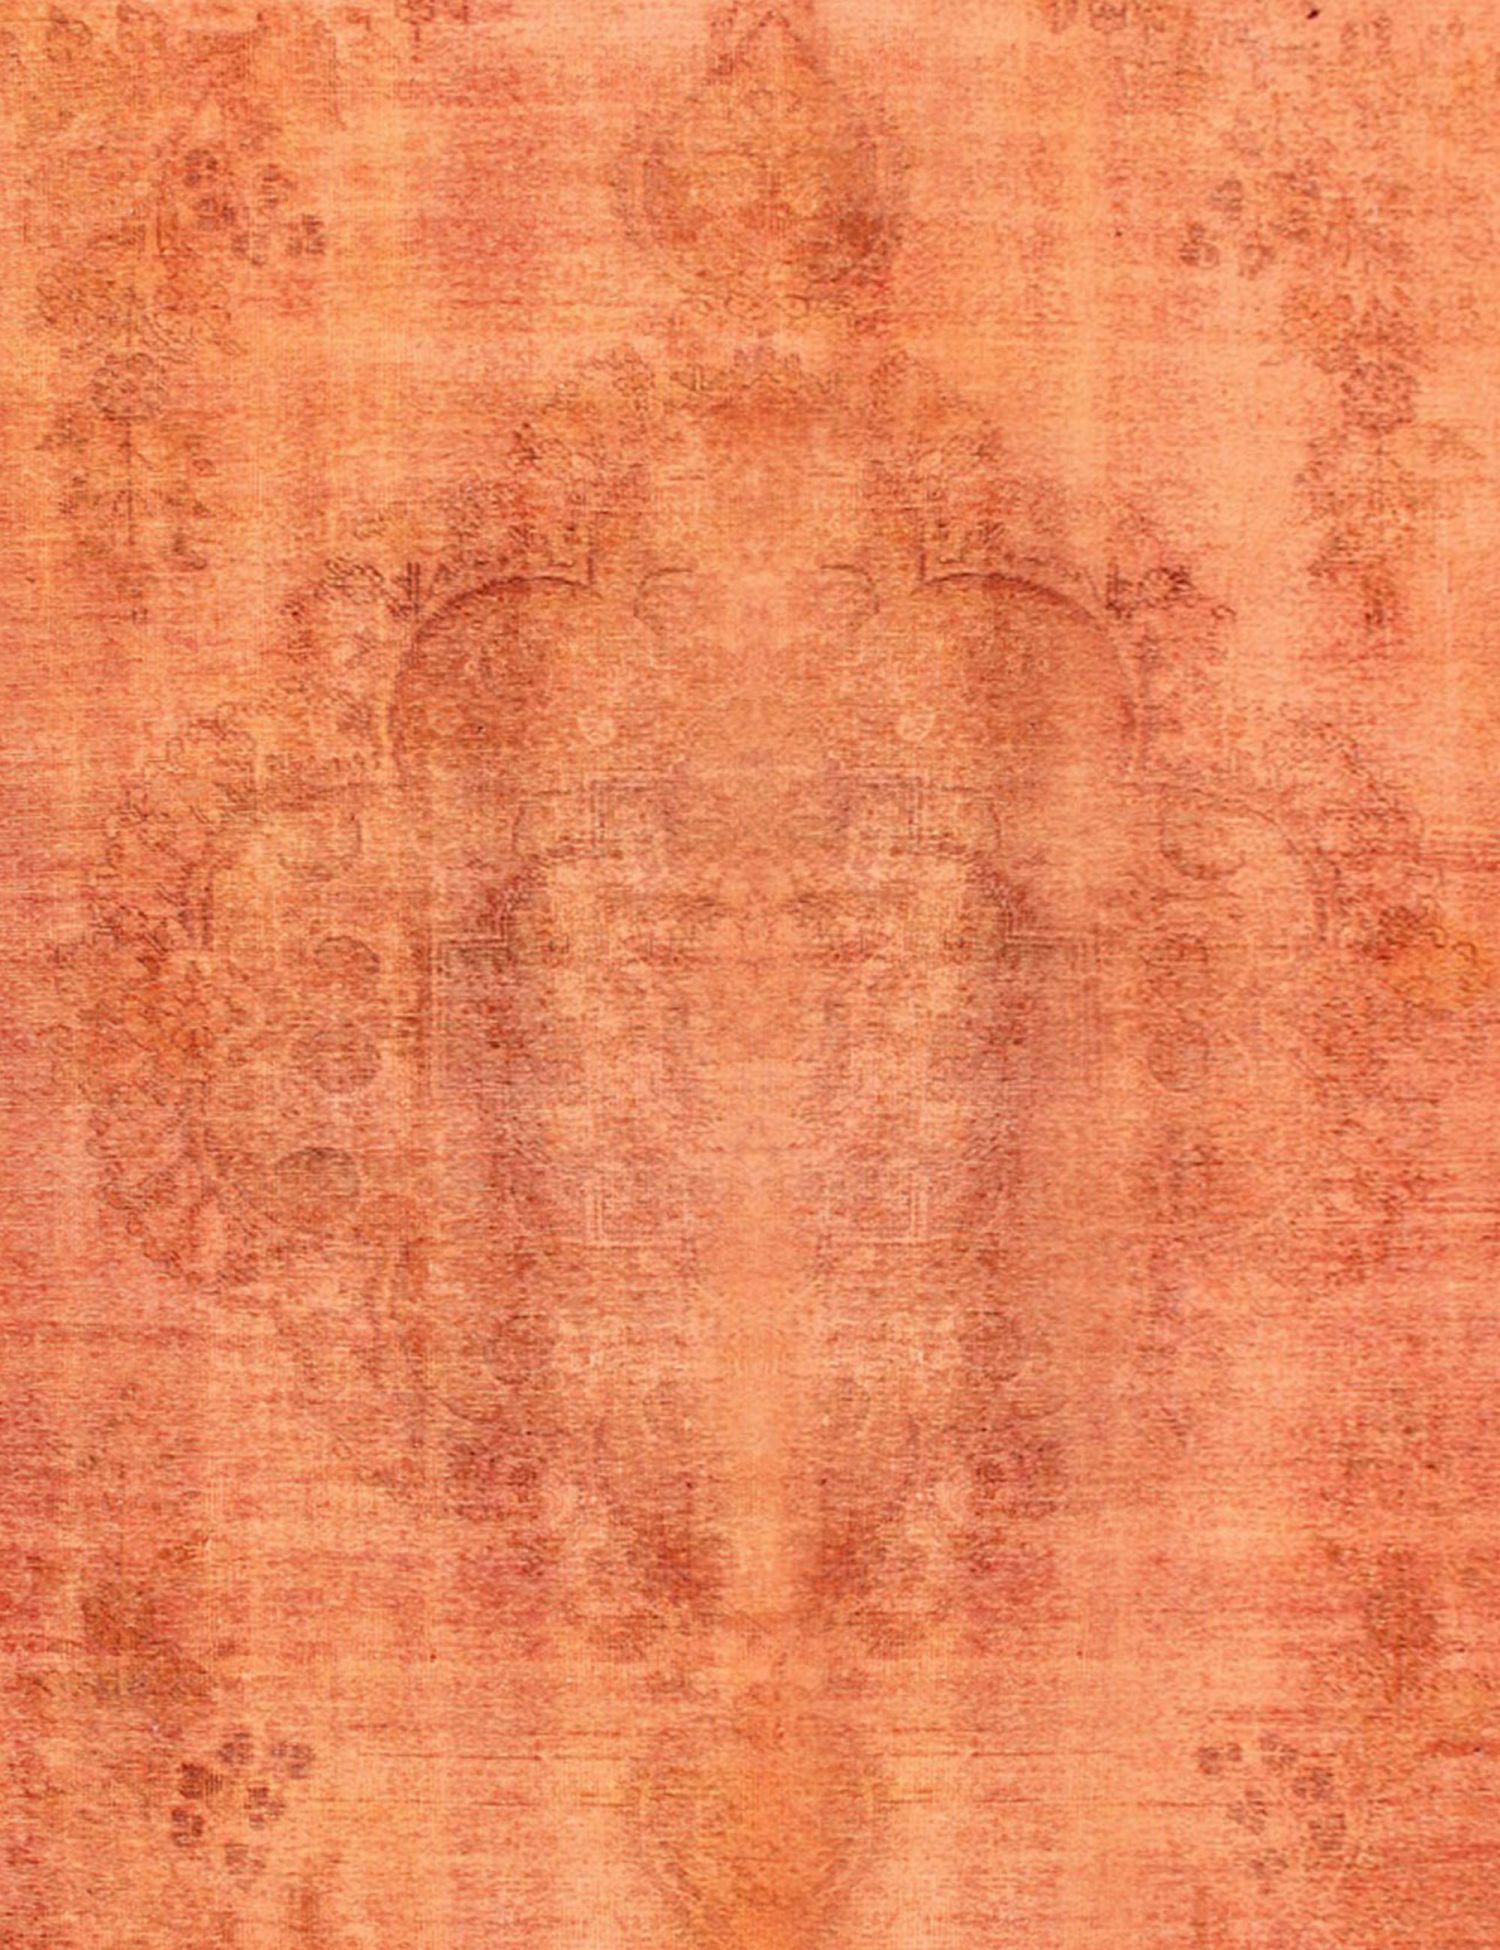 Persischer Vintage Teppich  orange <br/>285 x 285 cm